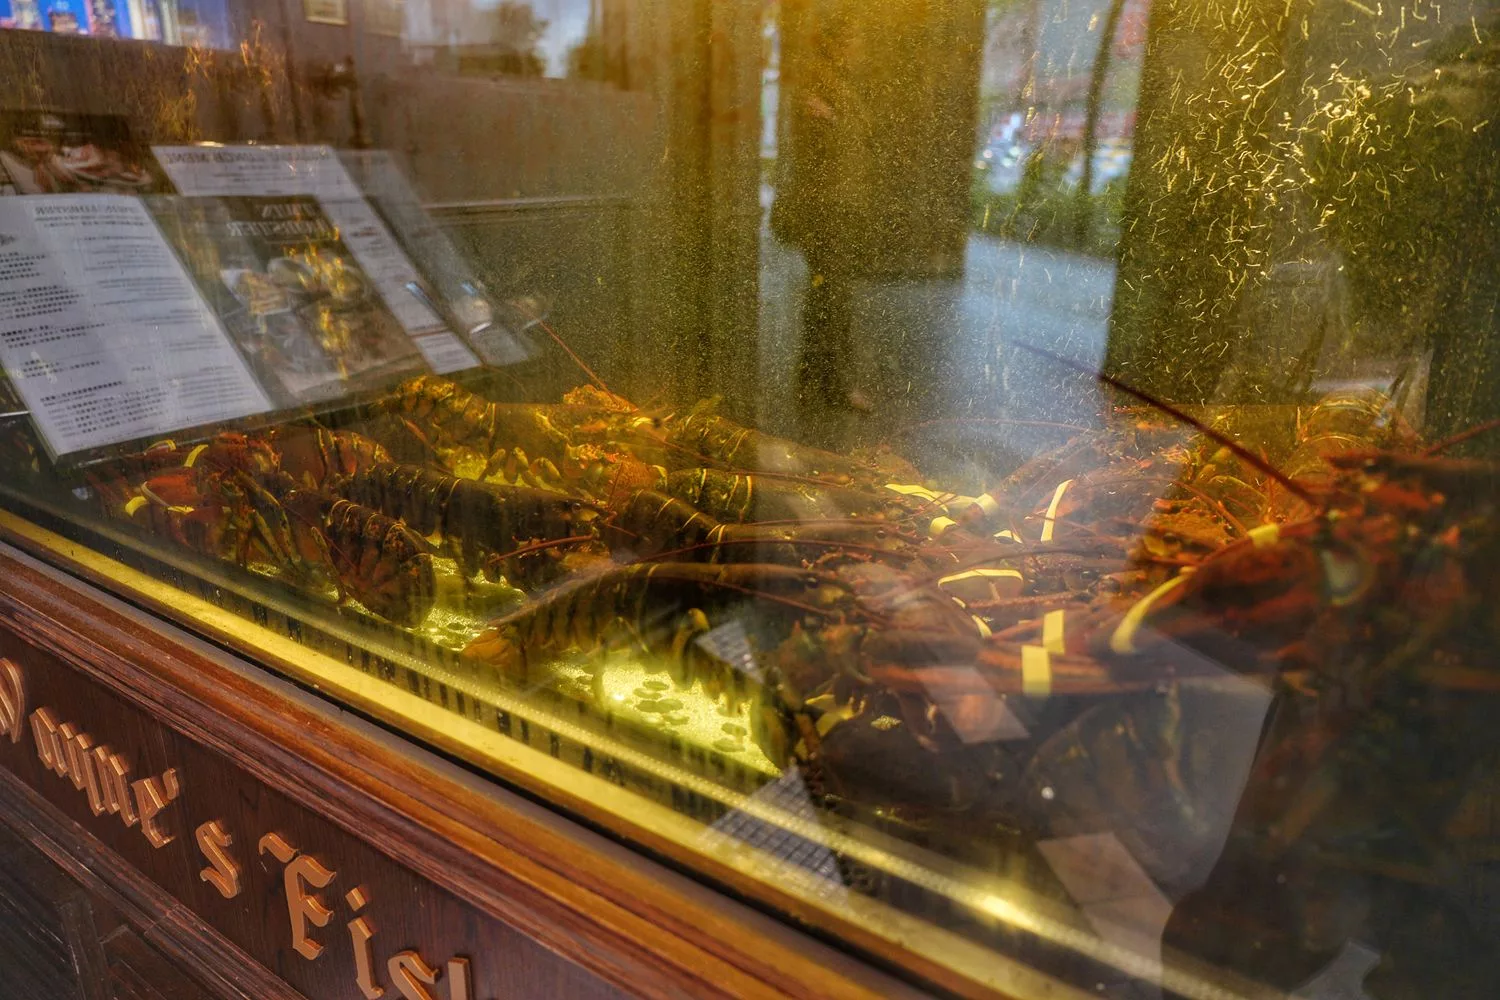 【台北龍蝦餐廳】Wayne’s Seattle 瑋恩西雅圖美式龍蝦牛排餐廳，約會慶生週年儀式感首選! @混血珊莎的奇幻旅程